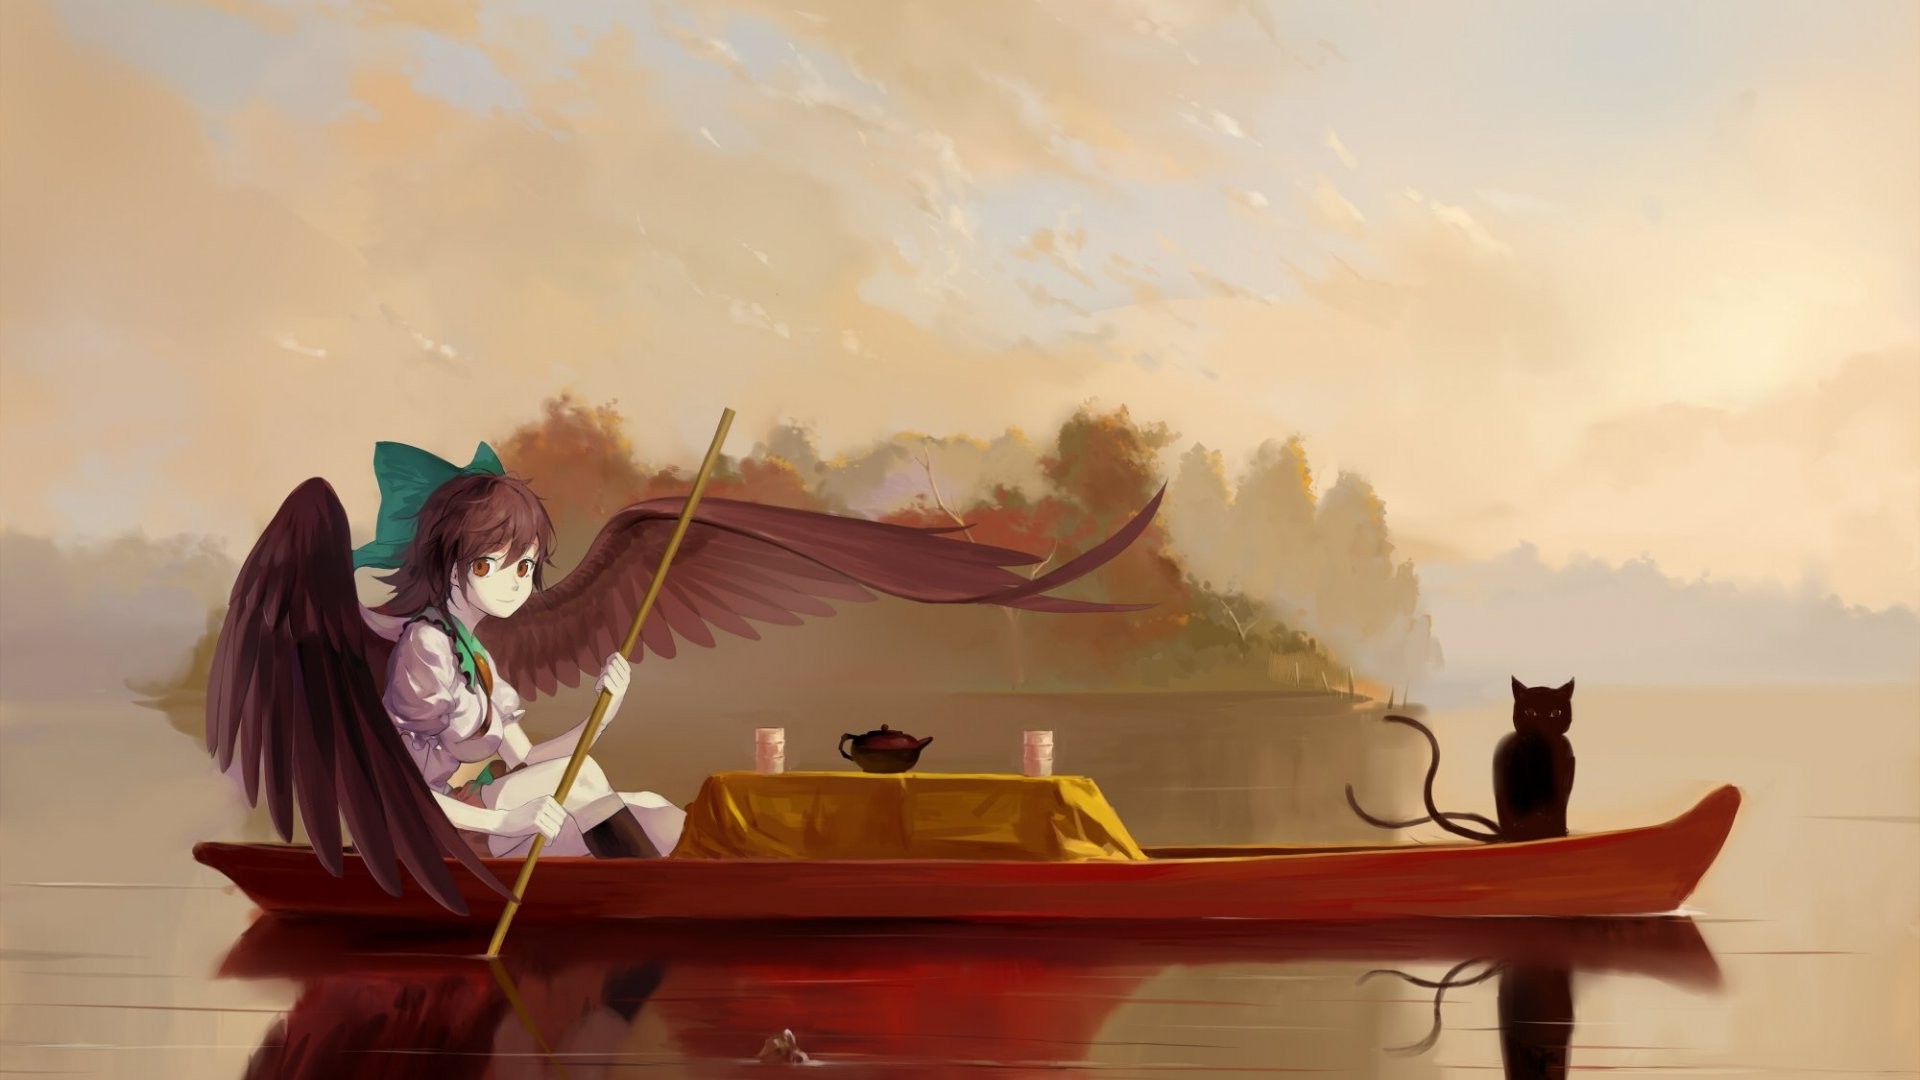 cat, Boat, Wings, River, Tea, Kaenbyou Rin, Reiuji Utsuho, Touhou Wallpaper